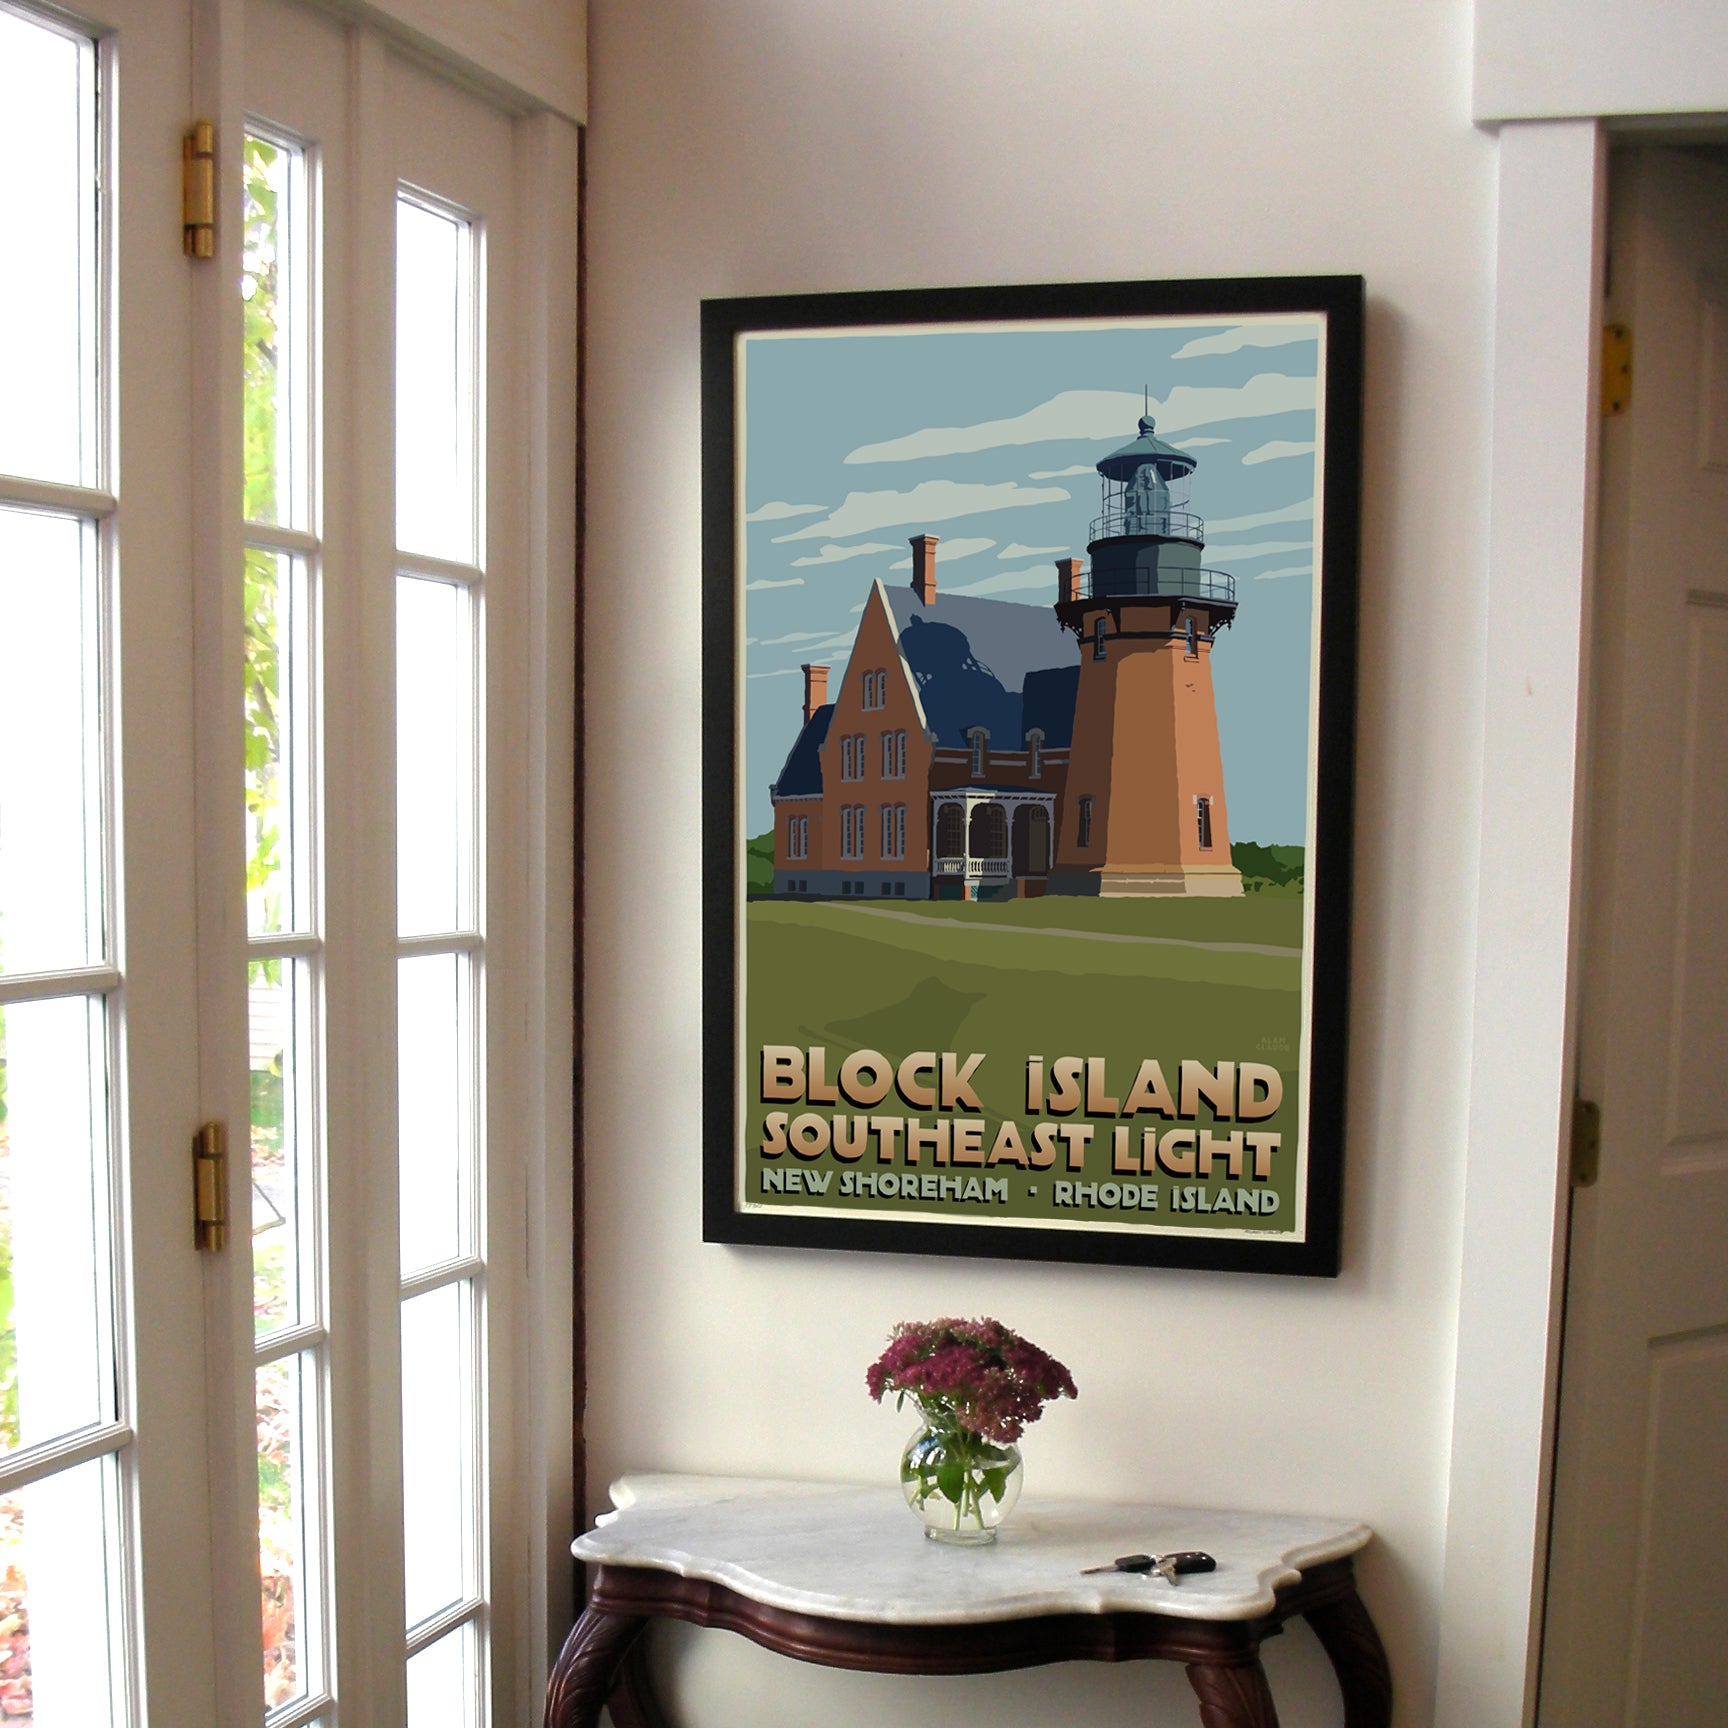 Block Island Southeast Light Art Print 24" x 36" Framed Travel Poster By Alan Claude  - Rhode Island